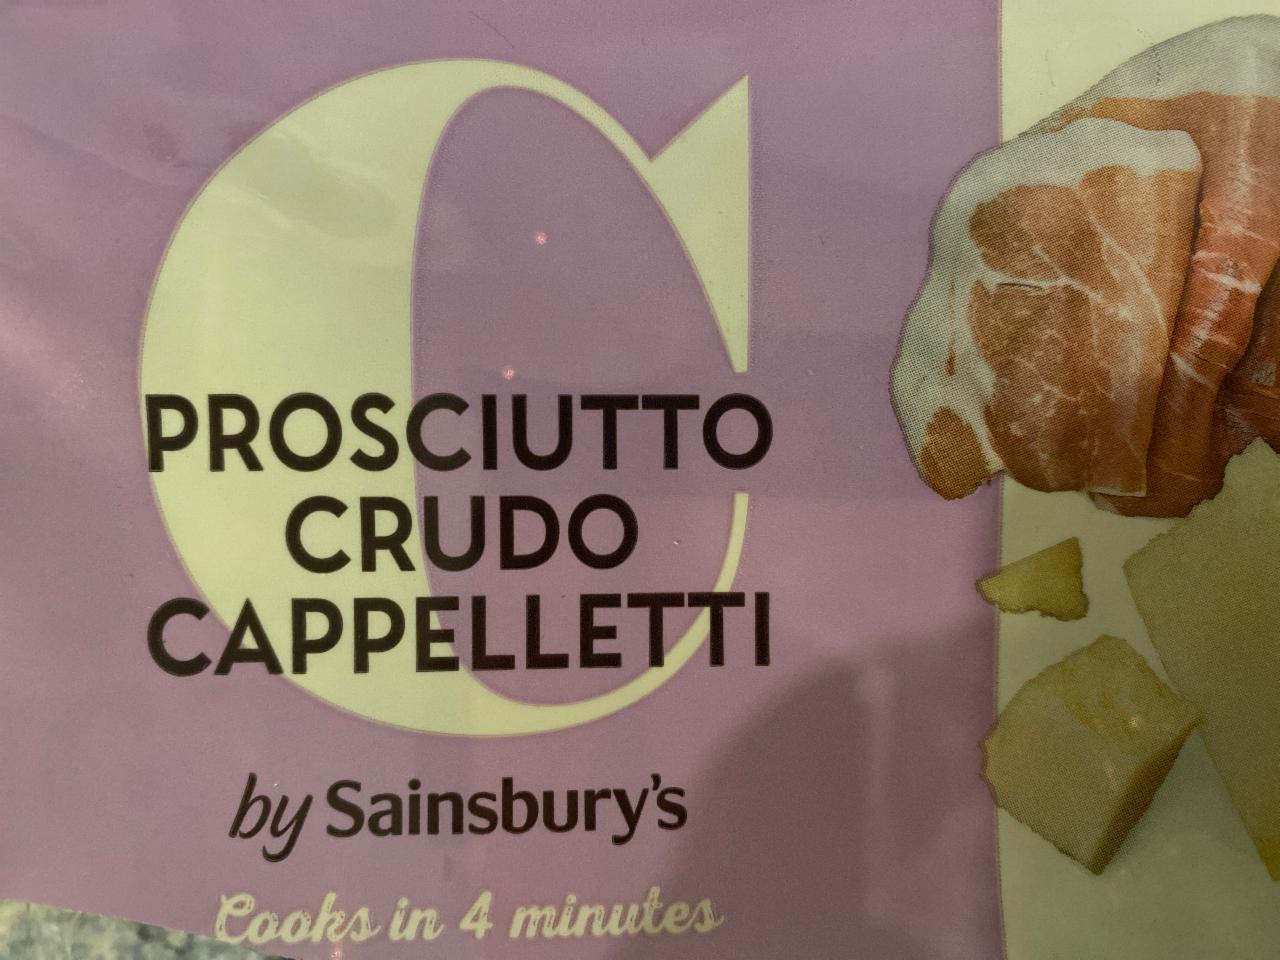 Fotografie - Prosciutto Crudo Cappelletti by Sainsbury's